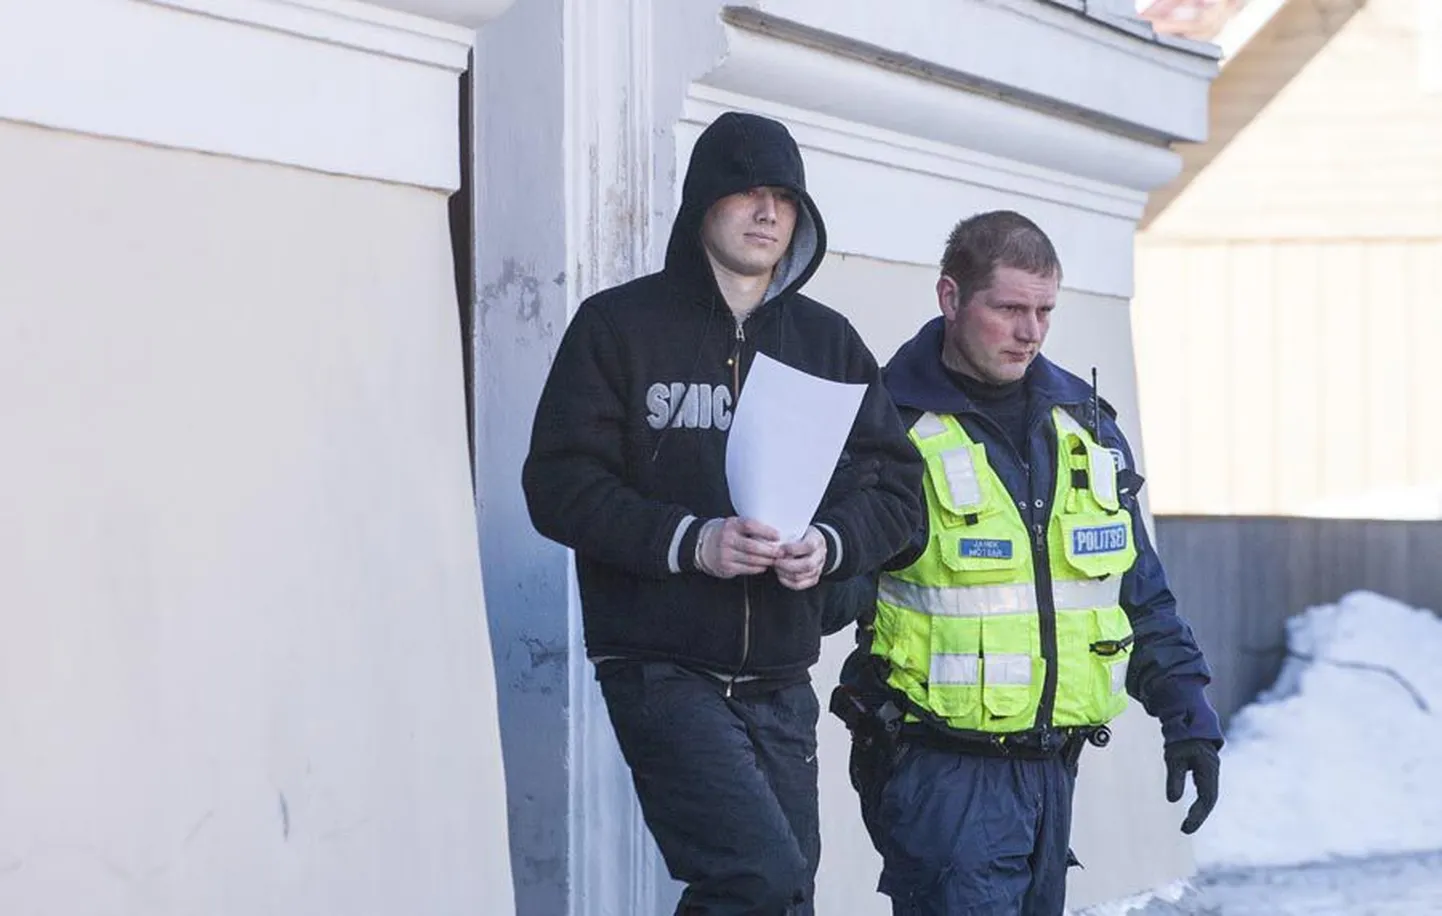 Silver Sisaskile oli eile Viljandis ette loetud kohtuotsus juba teine, milles ta pangaautomaadi rüüstamise eest süüdi mõisteti. Samas pole ta ise end teos süüdi tunnistanud.